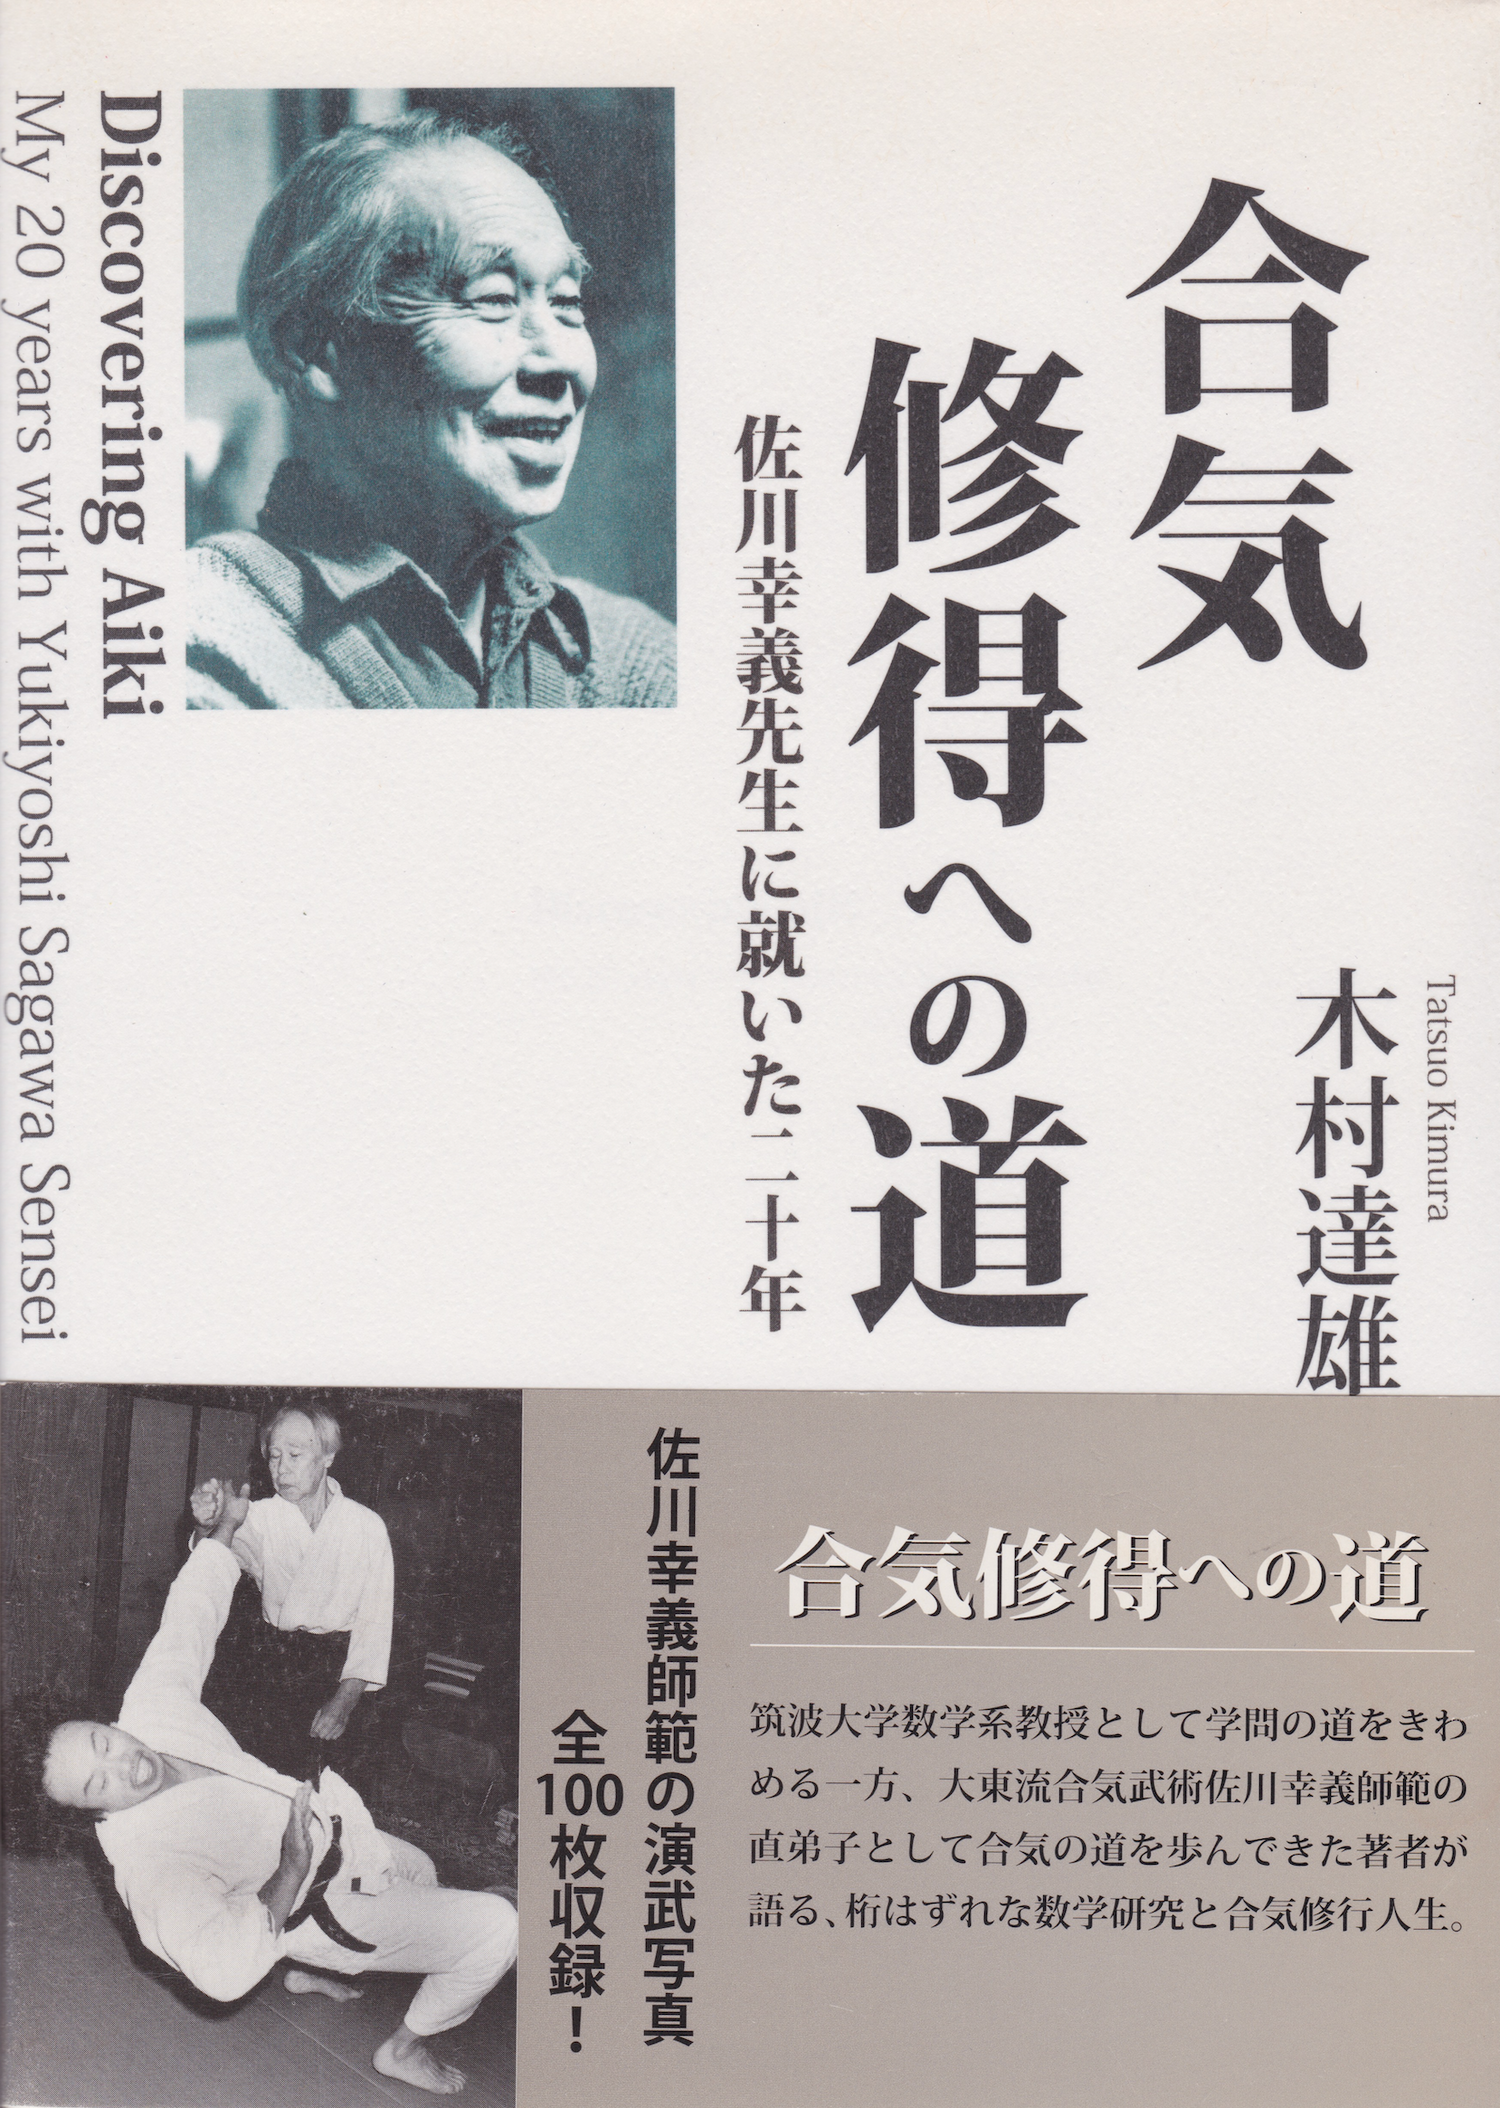 Descubriendo el Aiki: Mis 20 años con Yukiyoshi Sagawa Libro de Tatsuo Kimura (Usado)